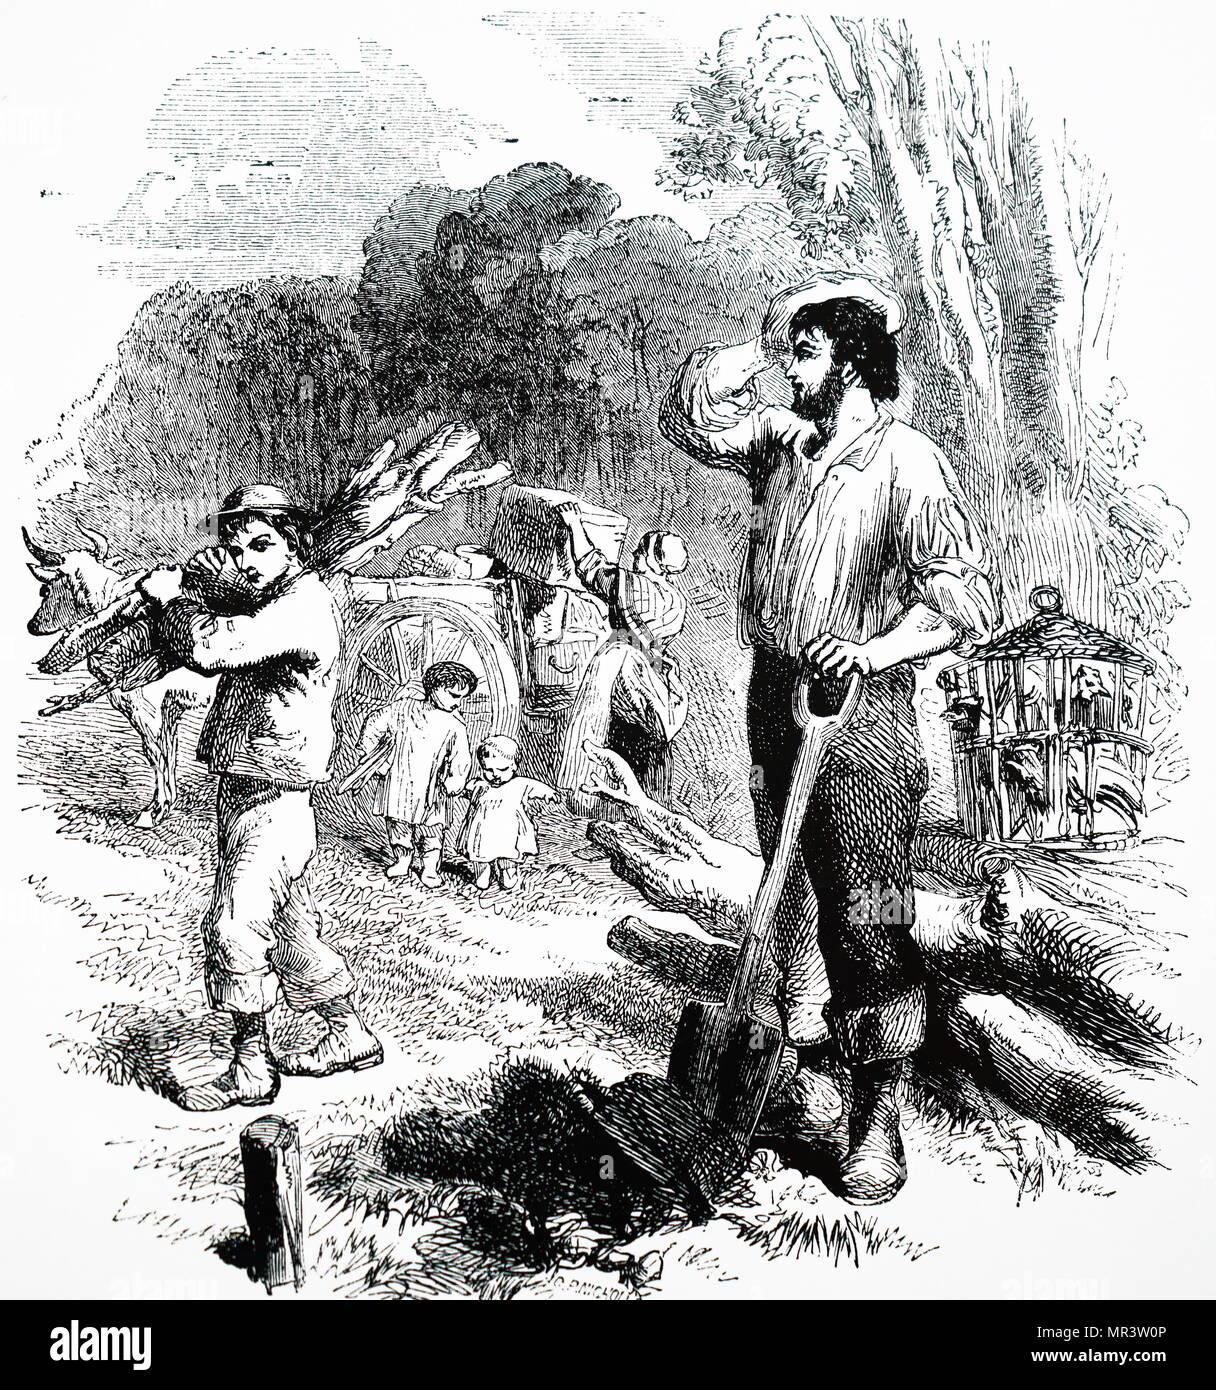 Abbildung: Darstellung von emigranten Clearing neue Wege in Australien. Vom 19. Jahrhundert Stockfoto